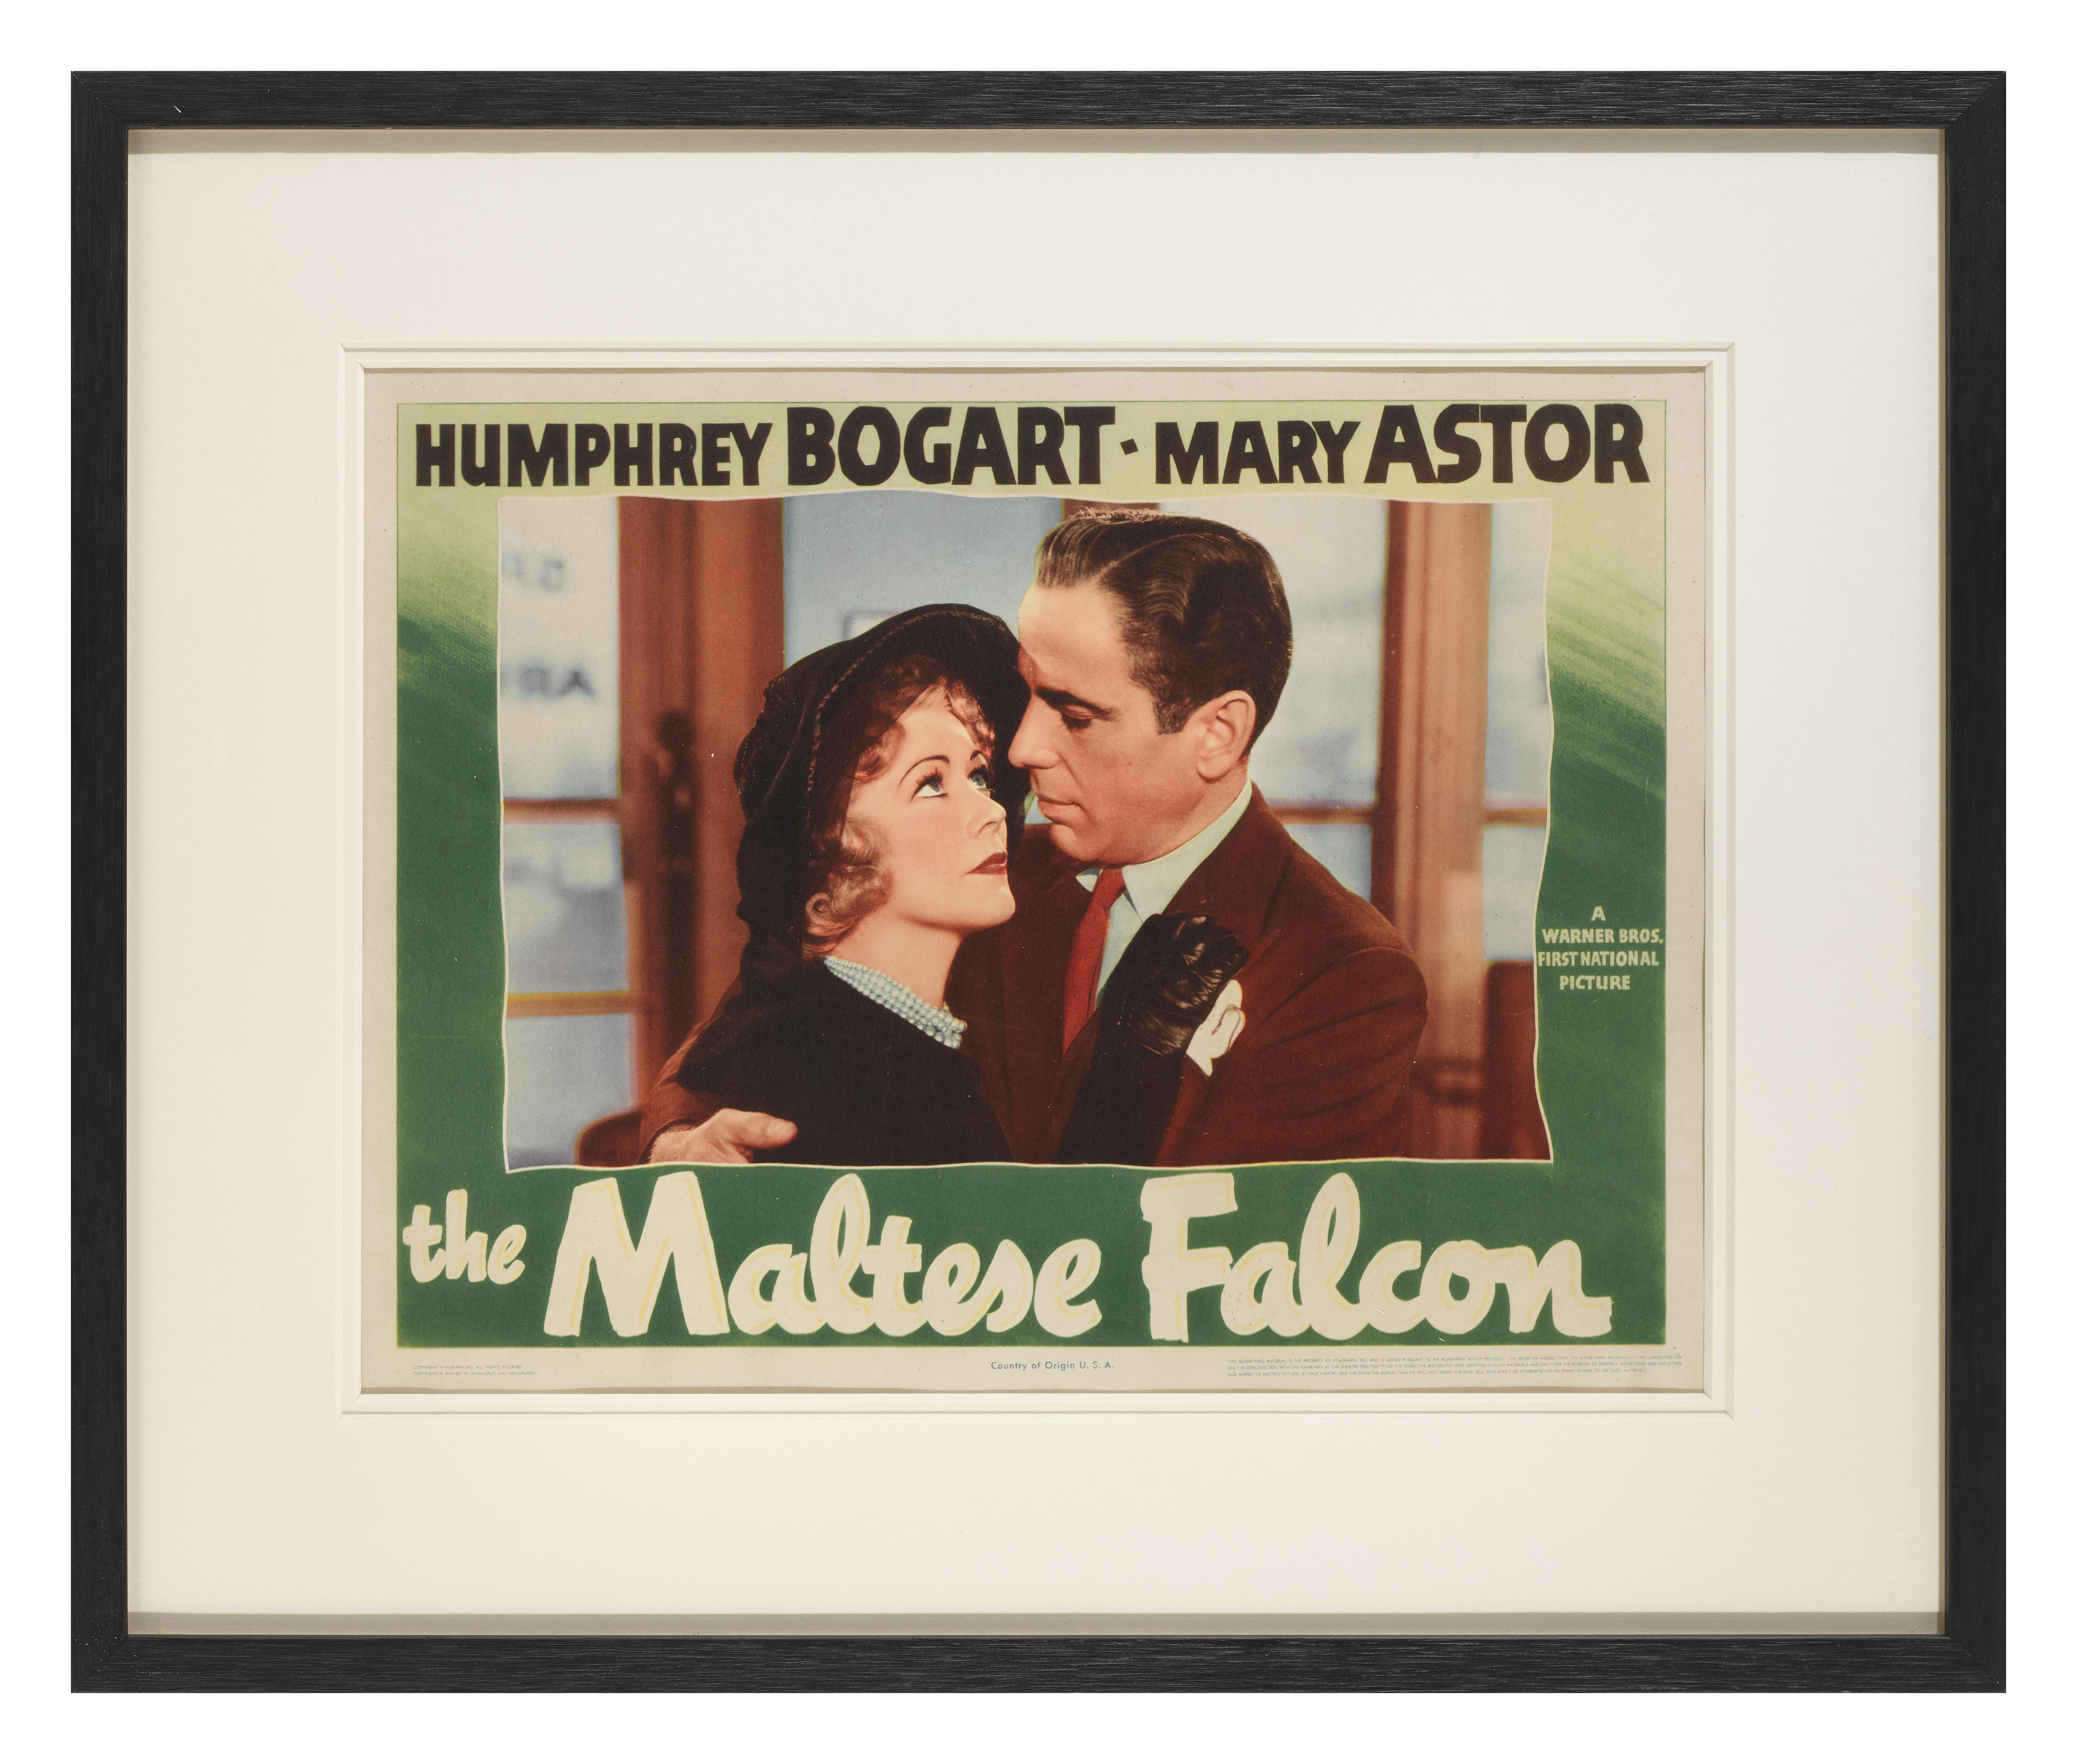 Eine seltene originale US-Lobbykartennummer für den Film Noir The Maltese Falcon von 1941.
Der Film mit Humphrey Bogart, Peter Lorre und Mary Astor in den Hauptrollen wurde unter der Regie von John Huston gedreht.
Das Werk ist mit UV-Plexiglas in